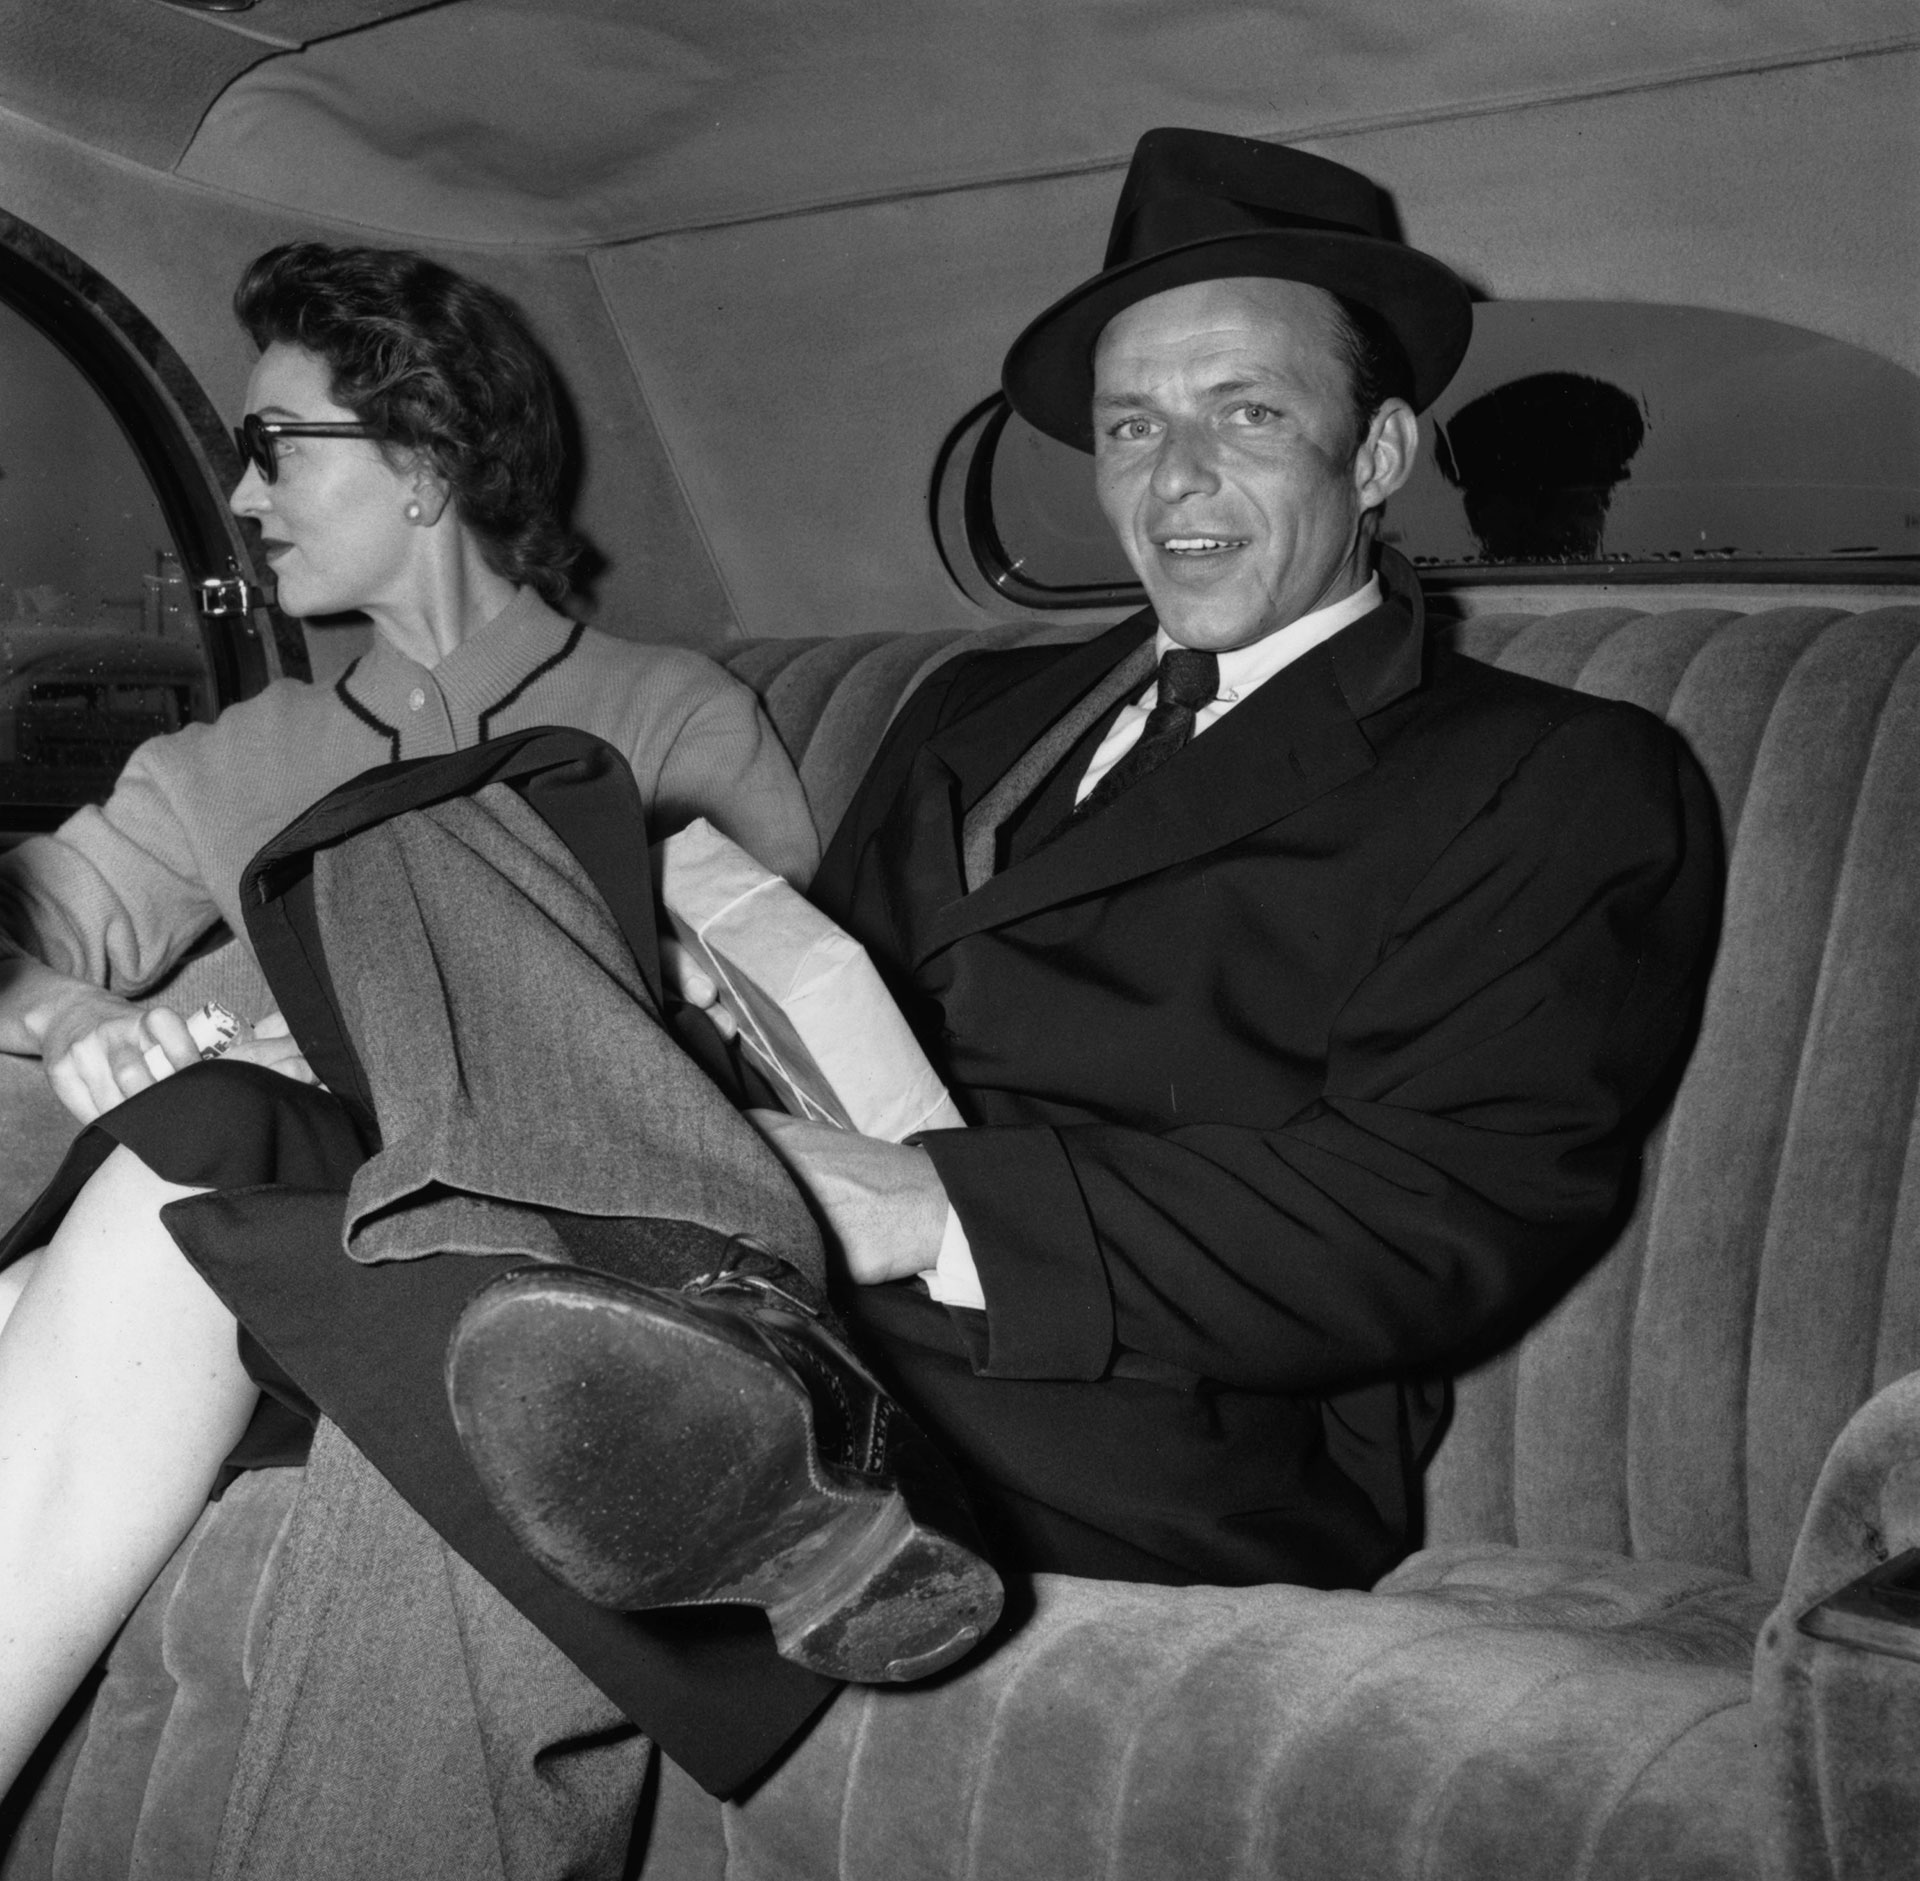 El cantante y actor de cine estadounidense Frank Sinatra y su entonces esposa Ava Gardner, el amor de su vida, llegando al aeropuerto de Londres. (Foto de D. G. Dawson/Hulton Archive/Getty Images)